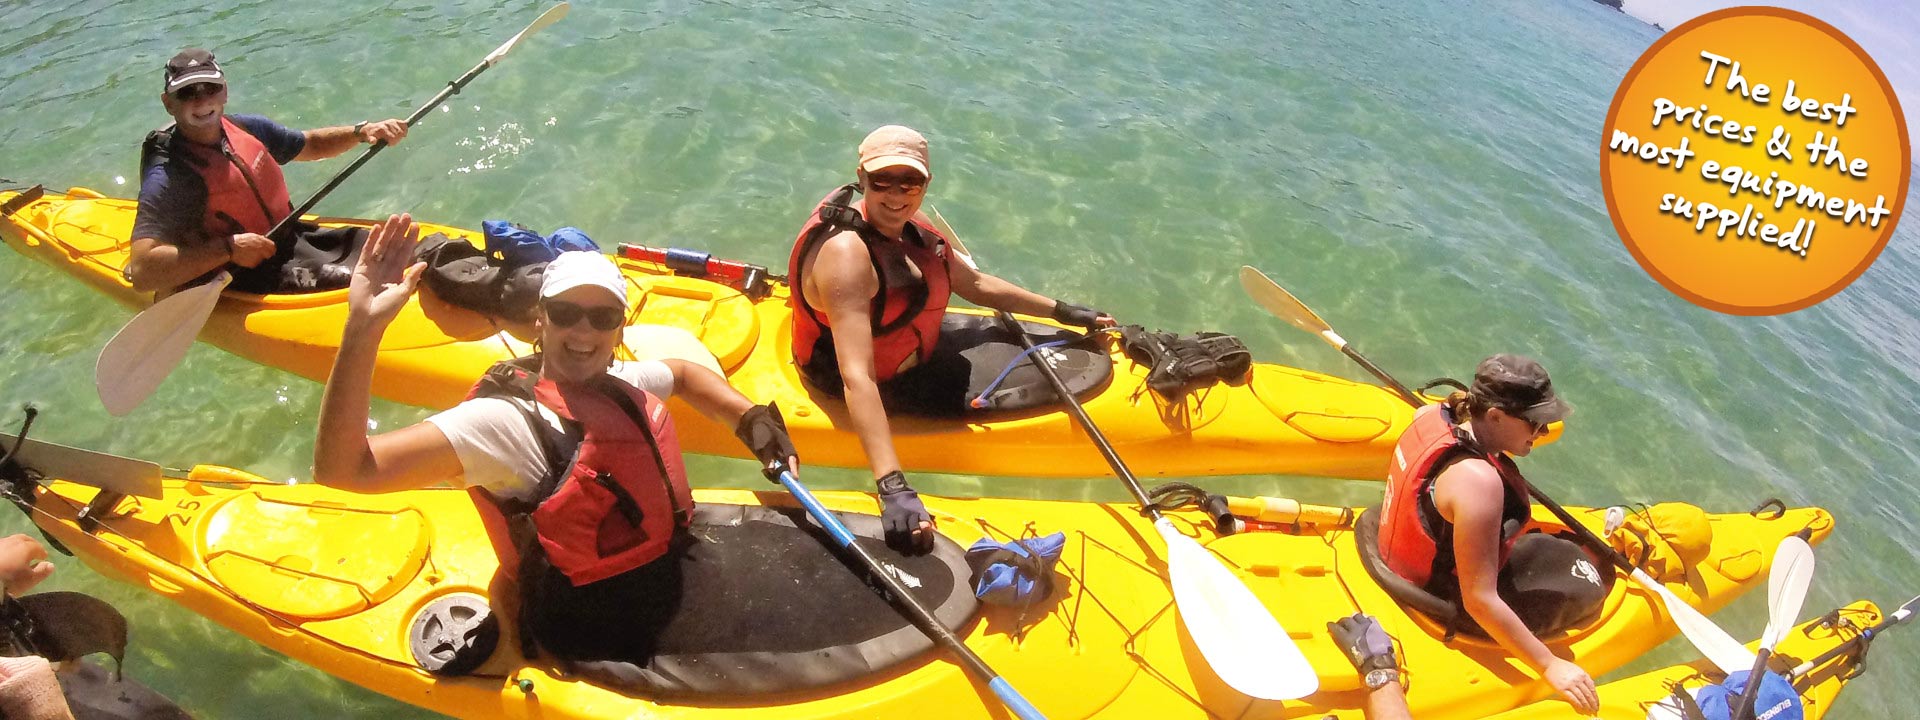 Freedom kayaking in the Abel Tasman